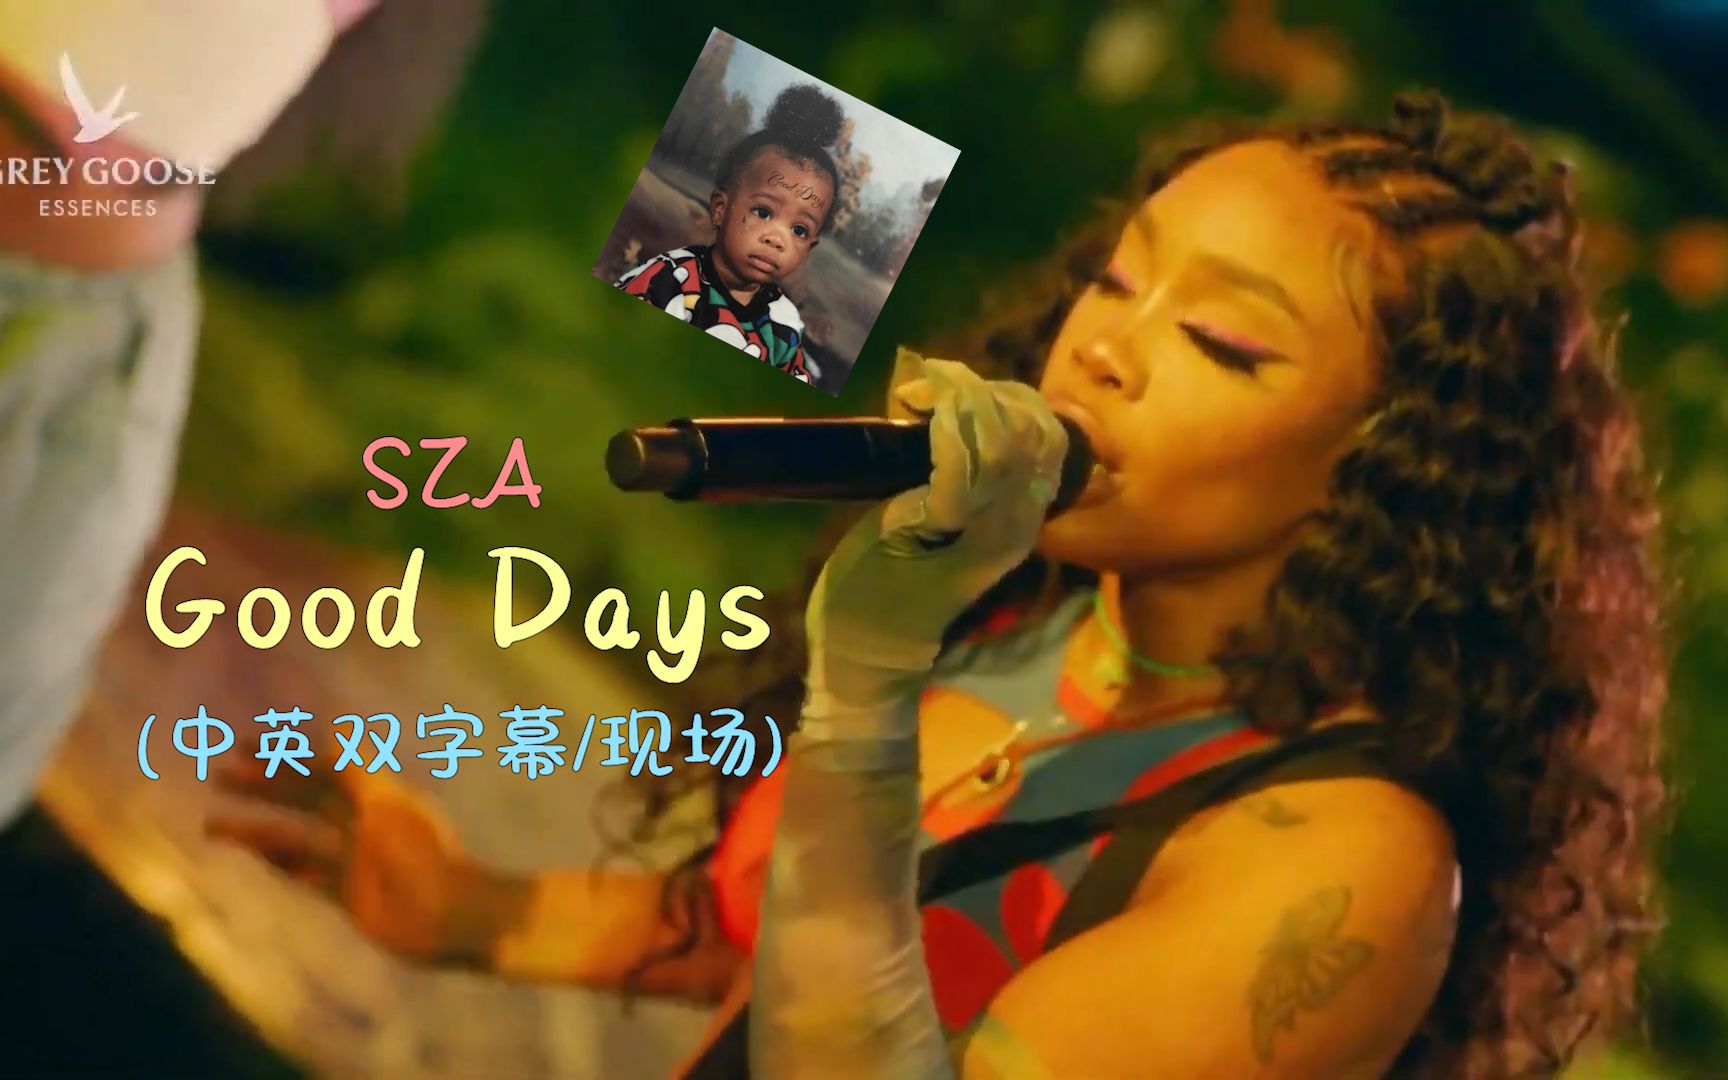 [中英现场] “追随青春的源泉 回到美好的日子” Good Days - SZA